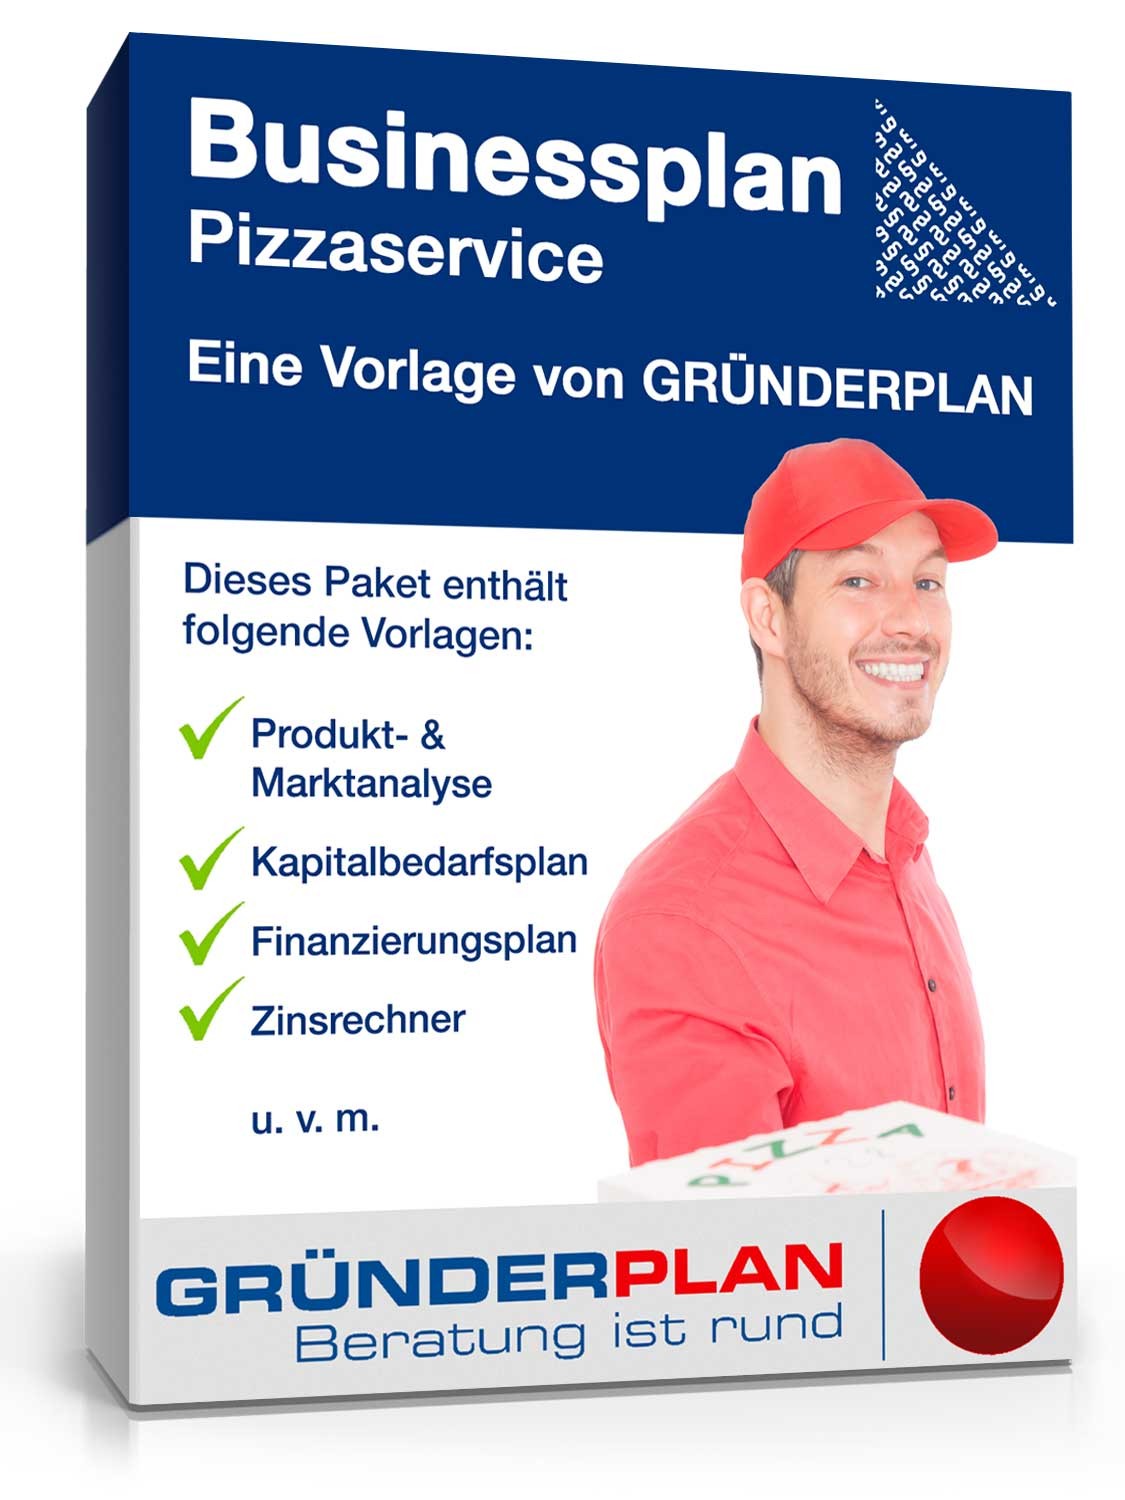 Hauptbild des Produkts: Businessplan Pizzaservice von Gründerplan